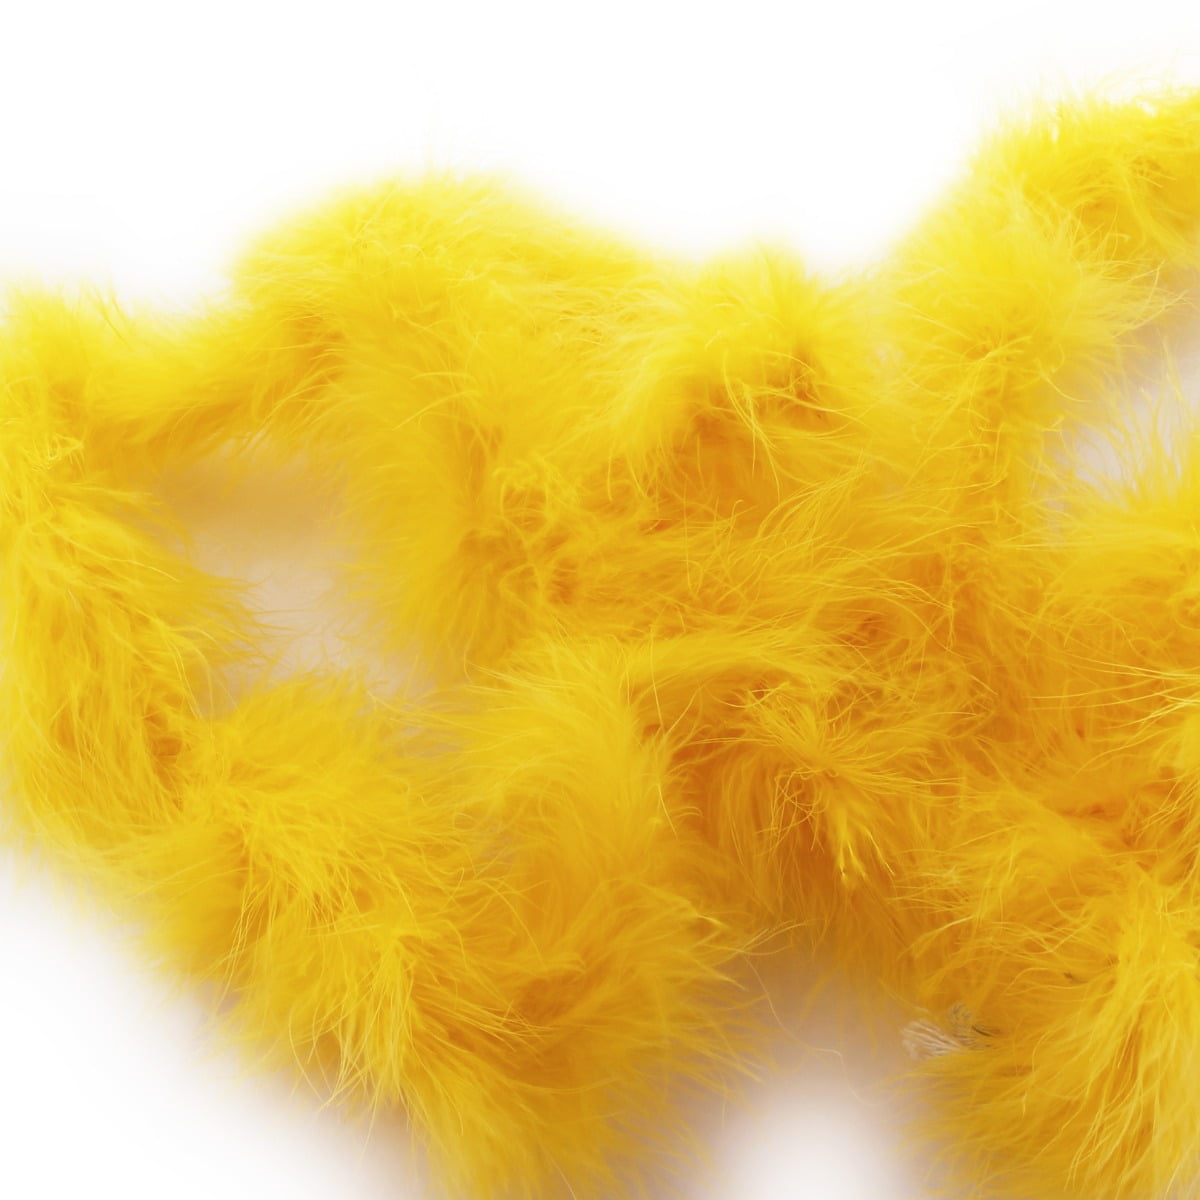 Hairbow Center Full Marabou Feather Boa - 2 Yards - Yellow, Adult Unisex, Size: One Size